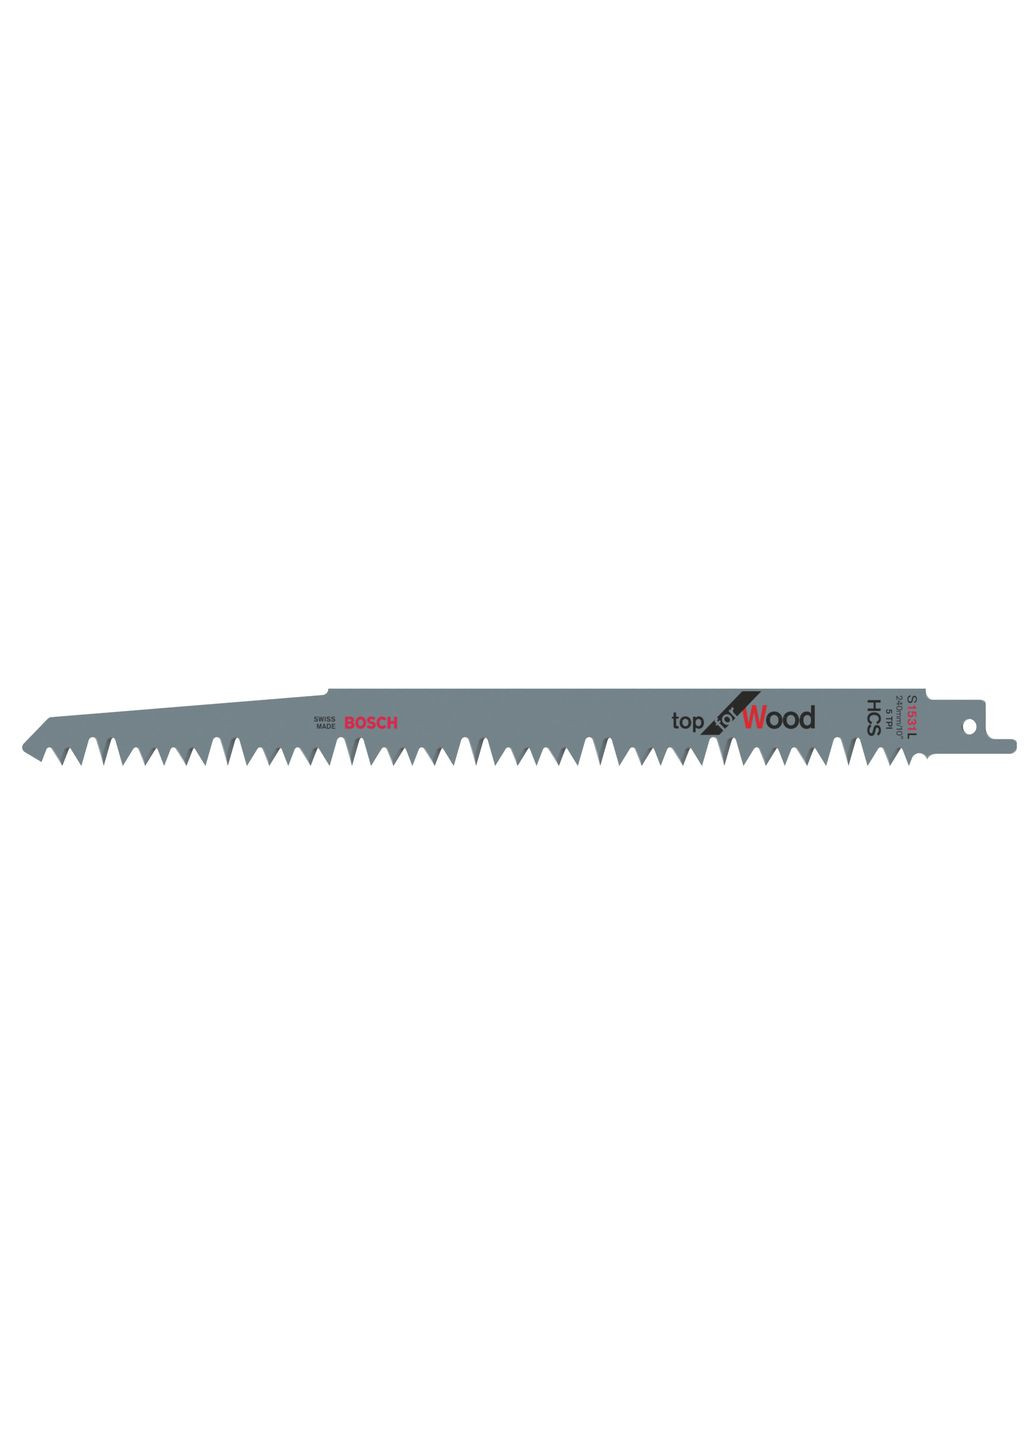 Пильное полотно HCS 2608650676 (S1531L, 240 мм) шабельное для ножовки (23378) Bosch (290253166)